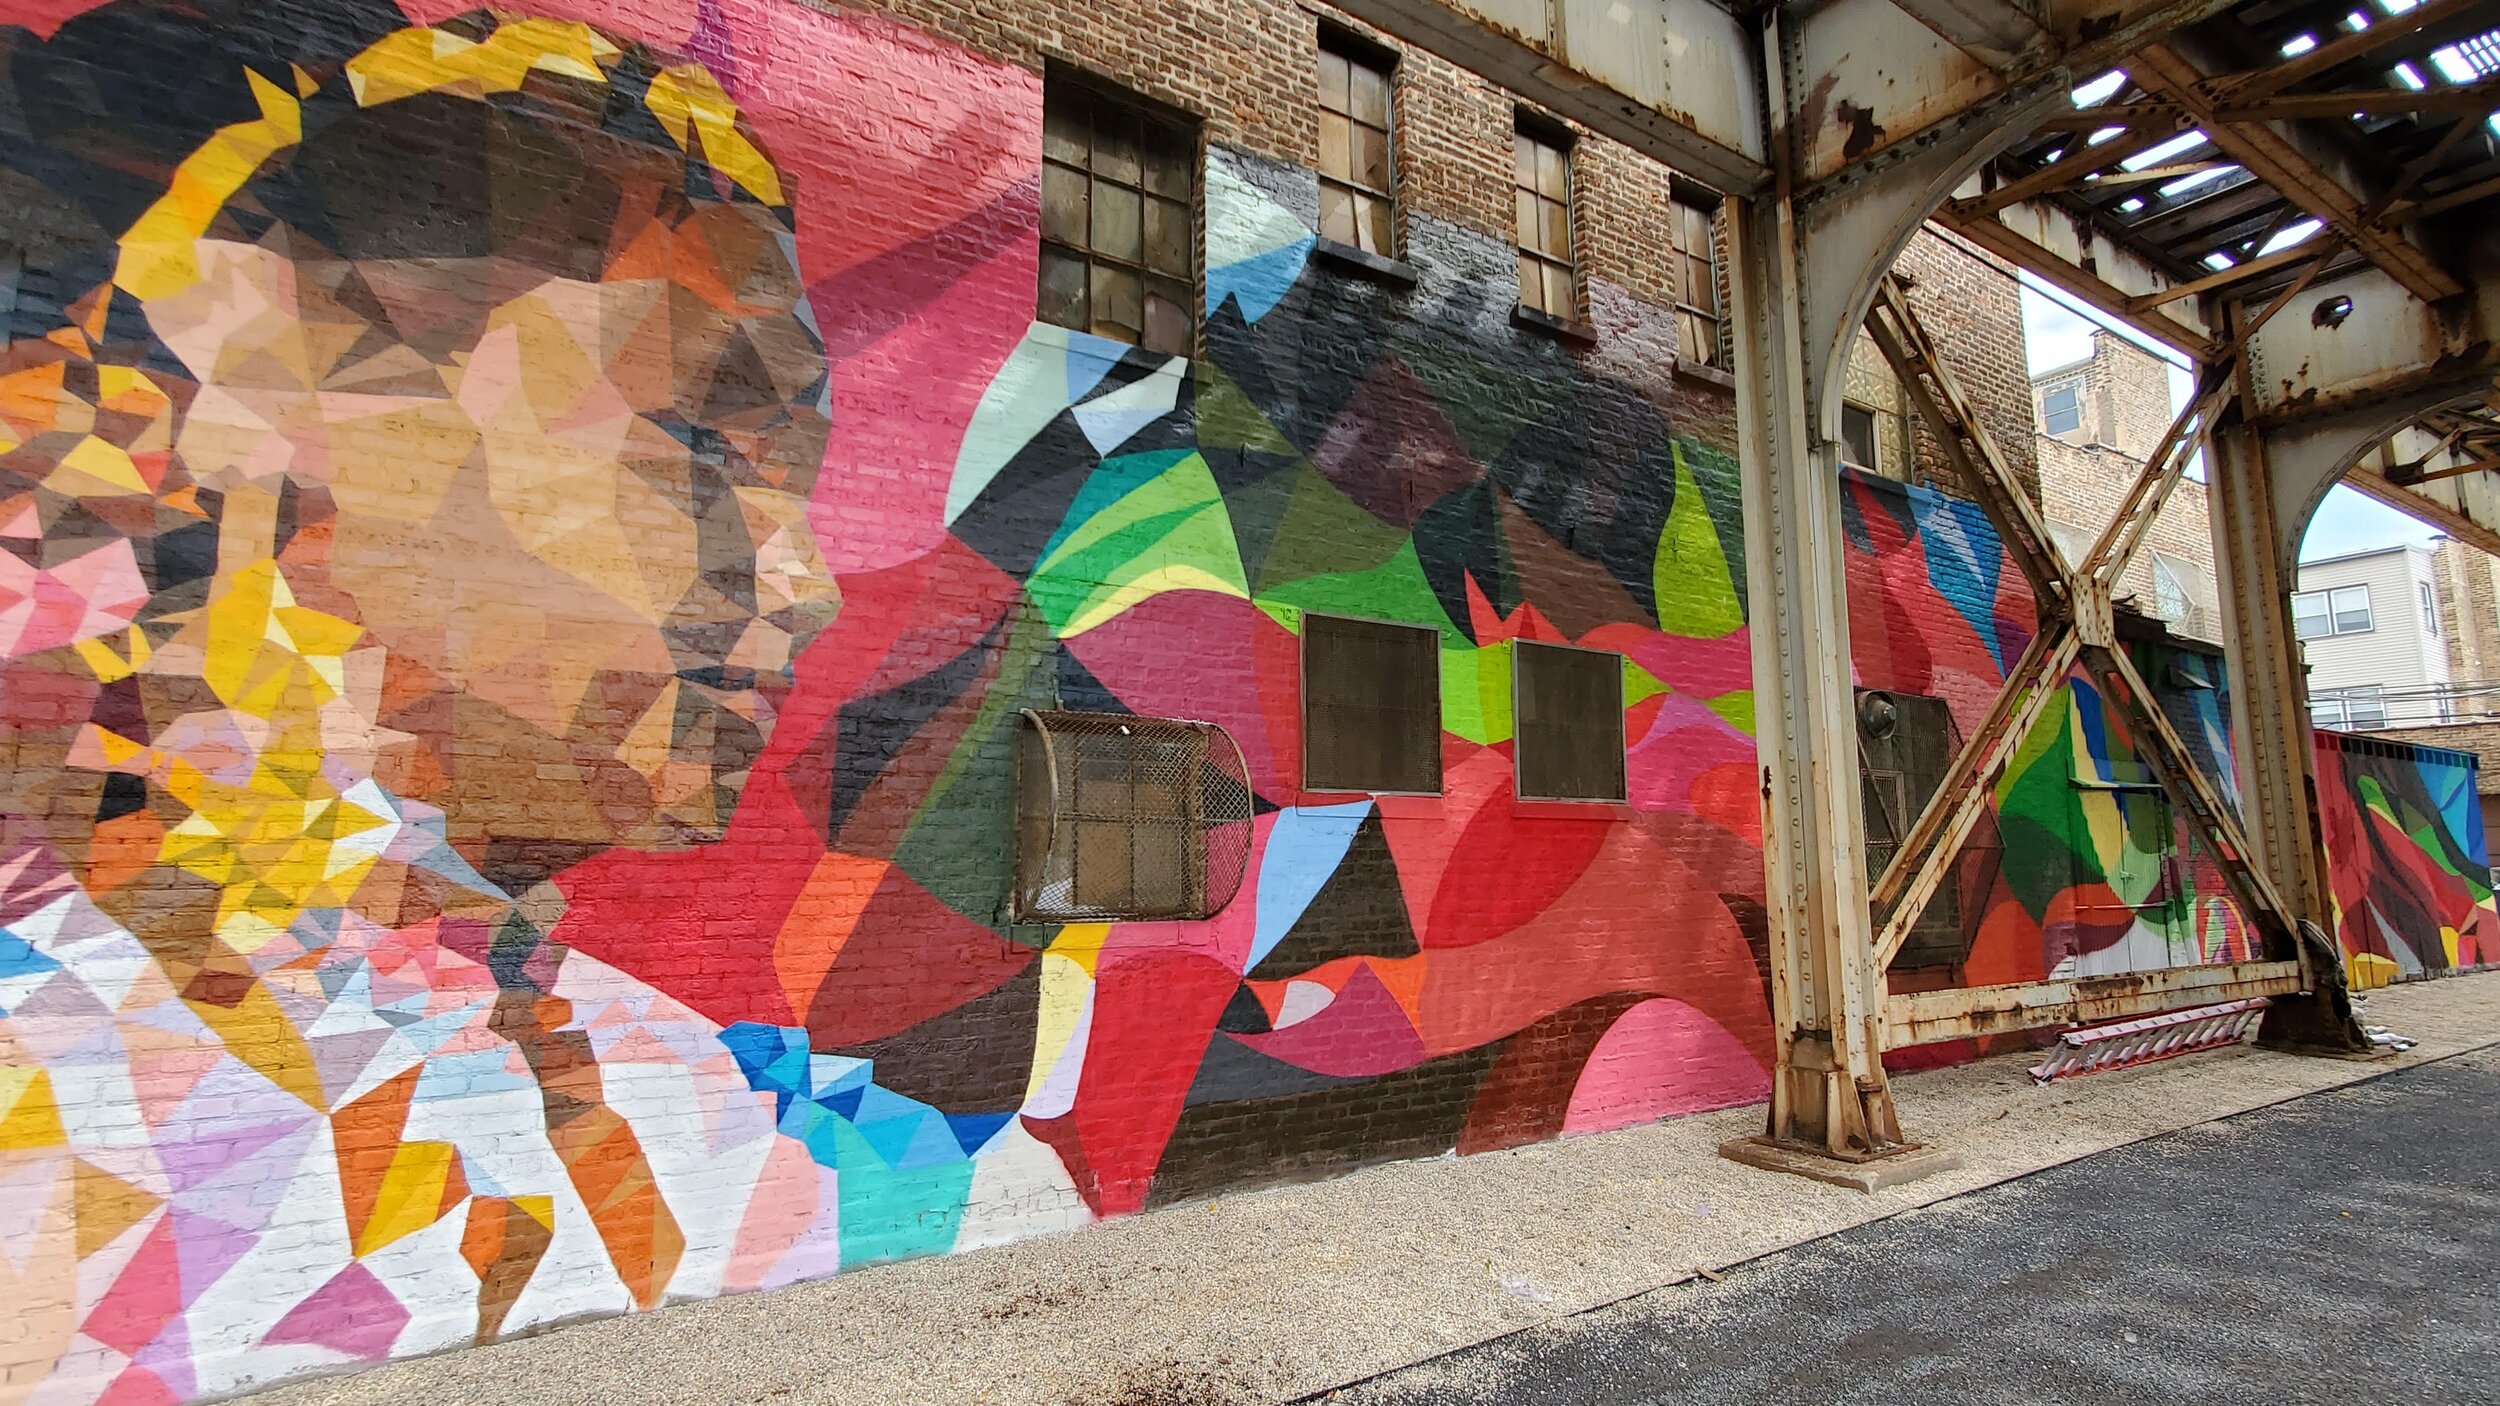 全年，毛里西奥·拉米雷斯(2020-2021):3415 N. 阿什兰大道:芝加哥本地人, Mauricio拉米雷斯, 讲述了季节如何影响整个城市的活动. 透过这幅壁画，你可以看到四季的色彩是如何变化的